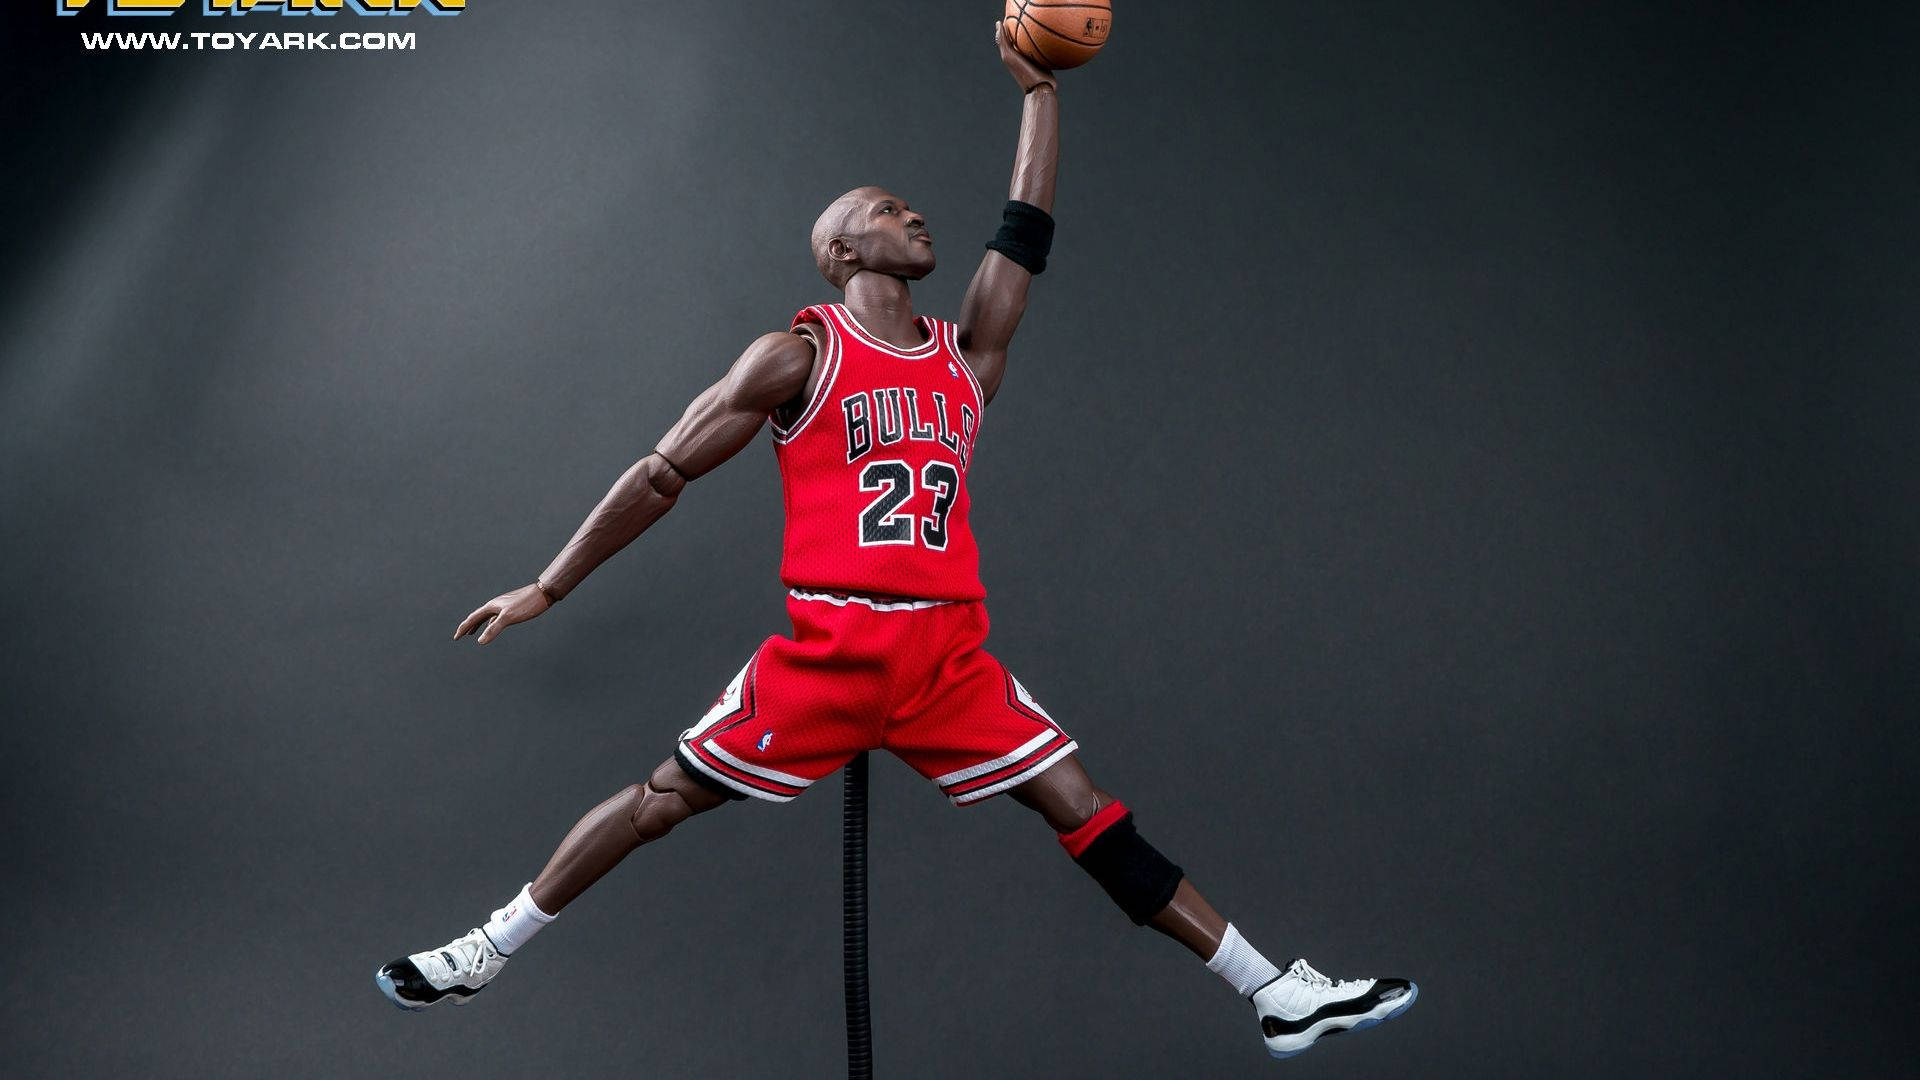 Motiverettil At Være Den Bedste - Michael Jordan Wallpaper